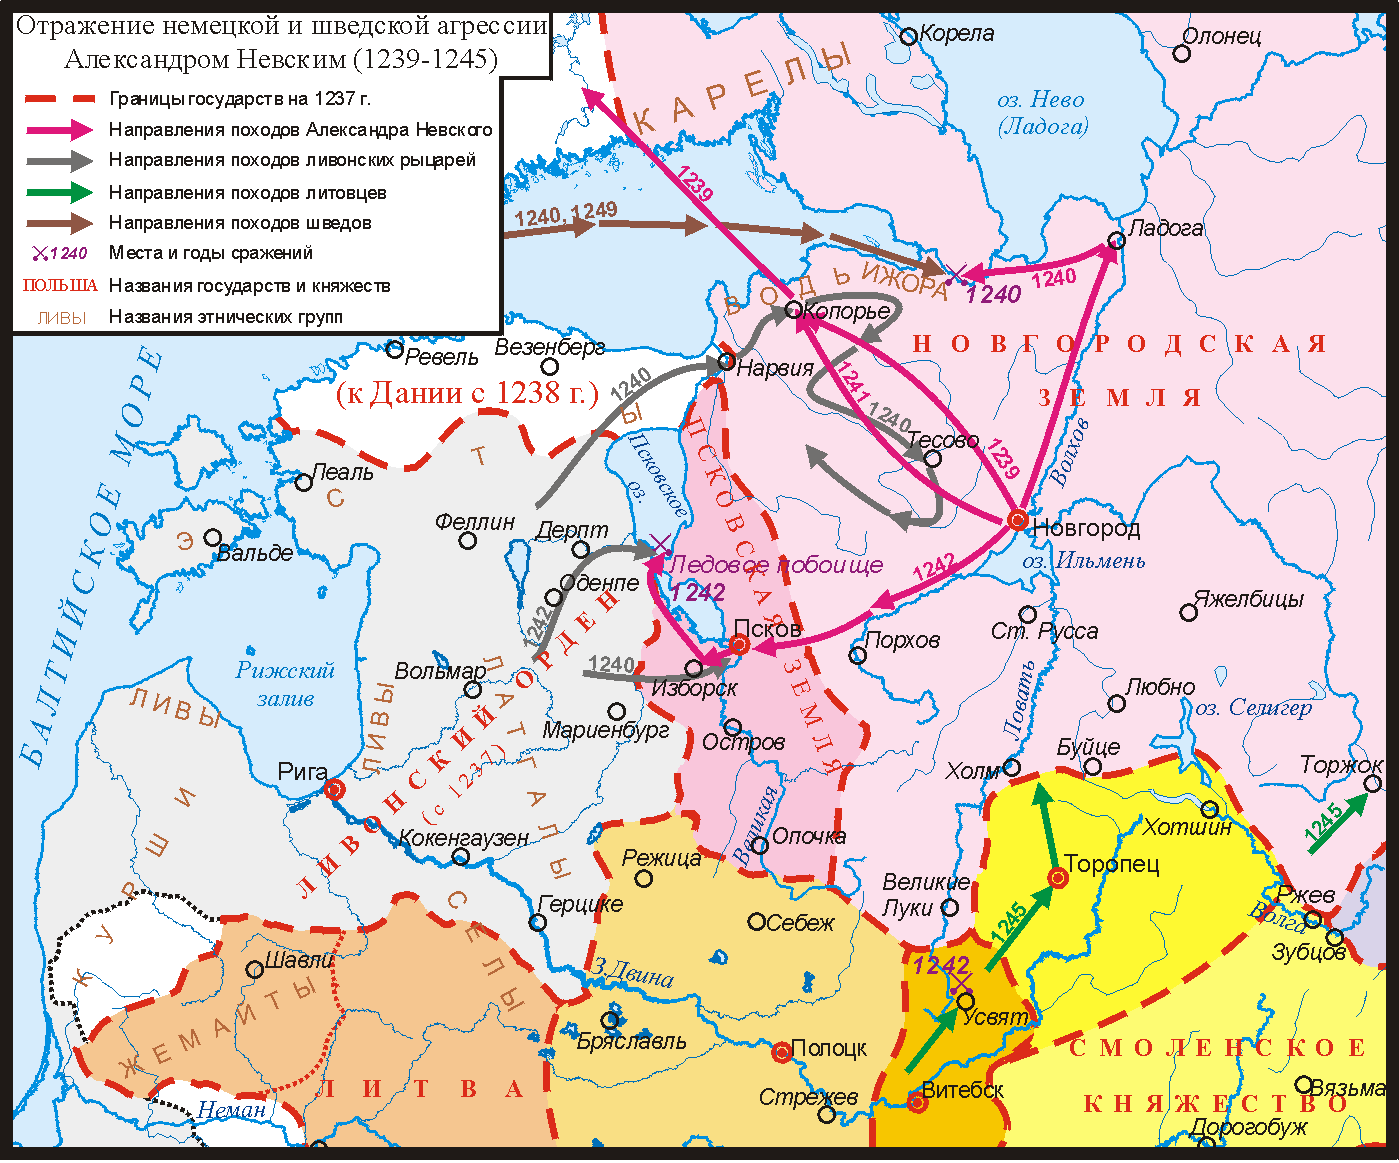 Доклад: Русско-шведская война 1788-1790 гг.